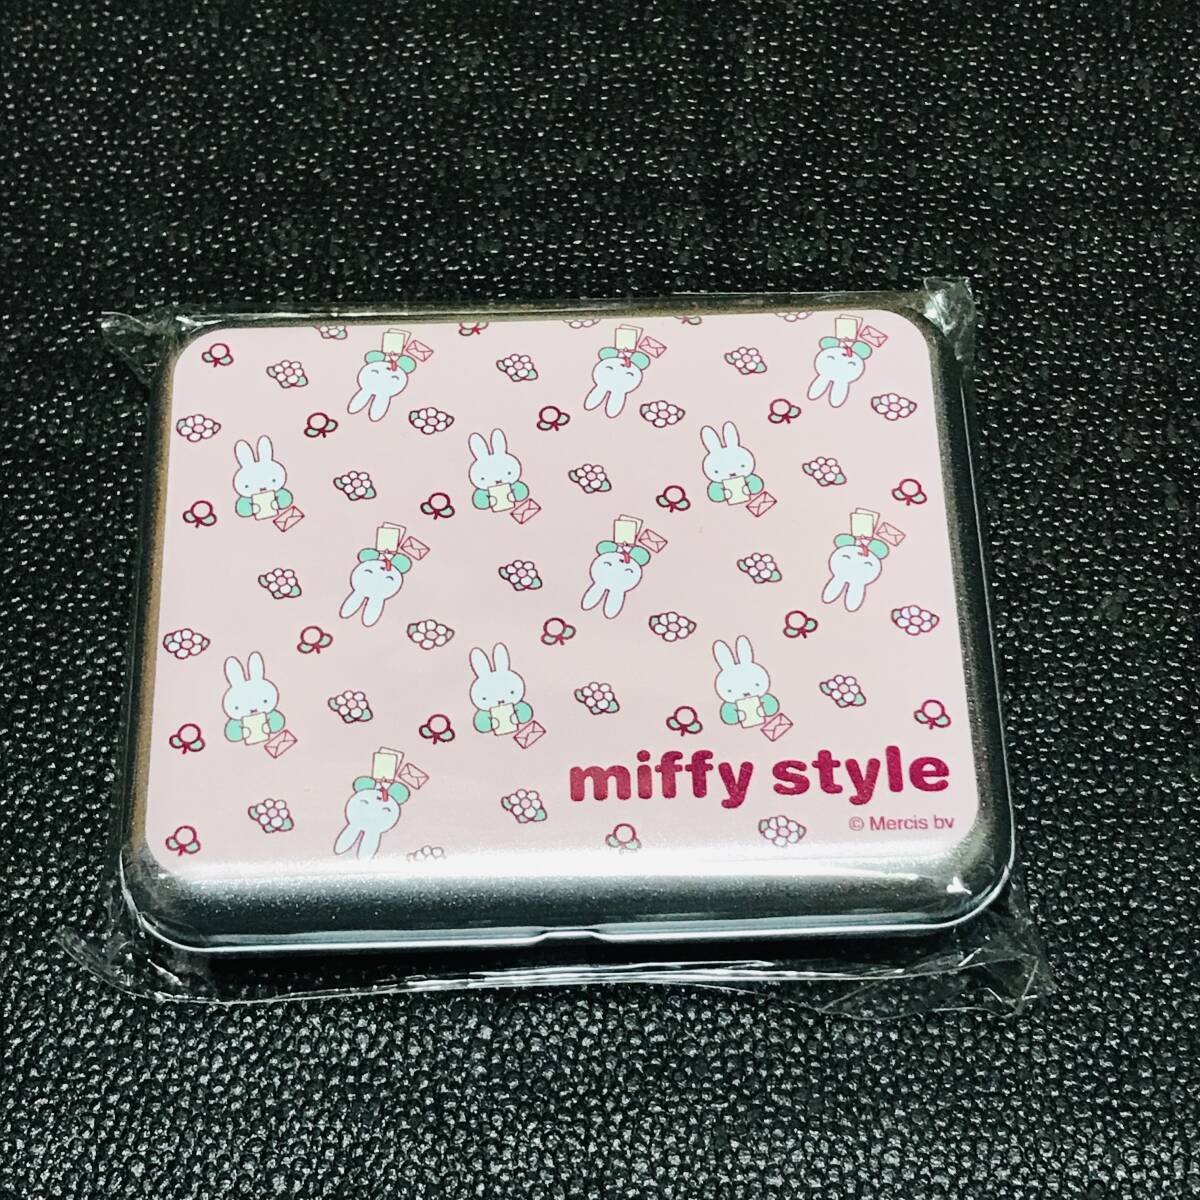 ピンク miffy style 限定 ミッフィースタイル 缶キャンディ ドロップス zakka フェスタ dickbruna ミッフィー展 ハウステンボス カフェ